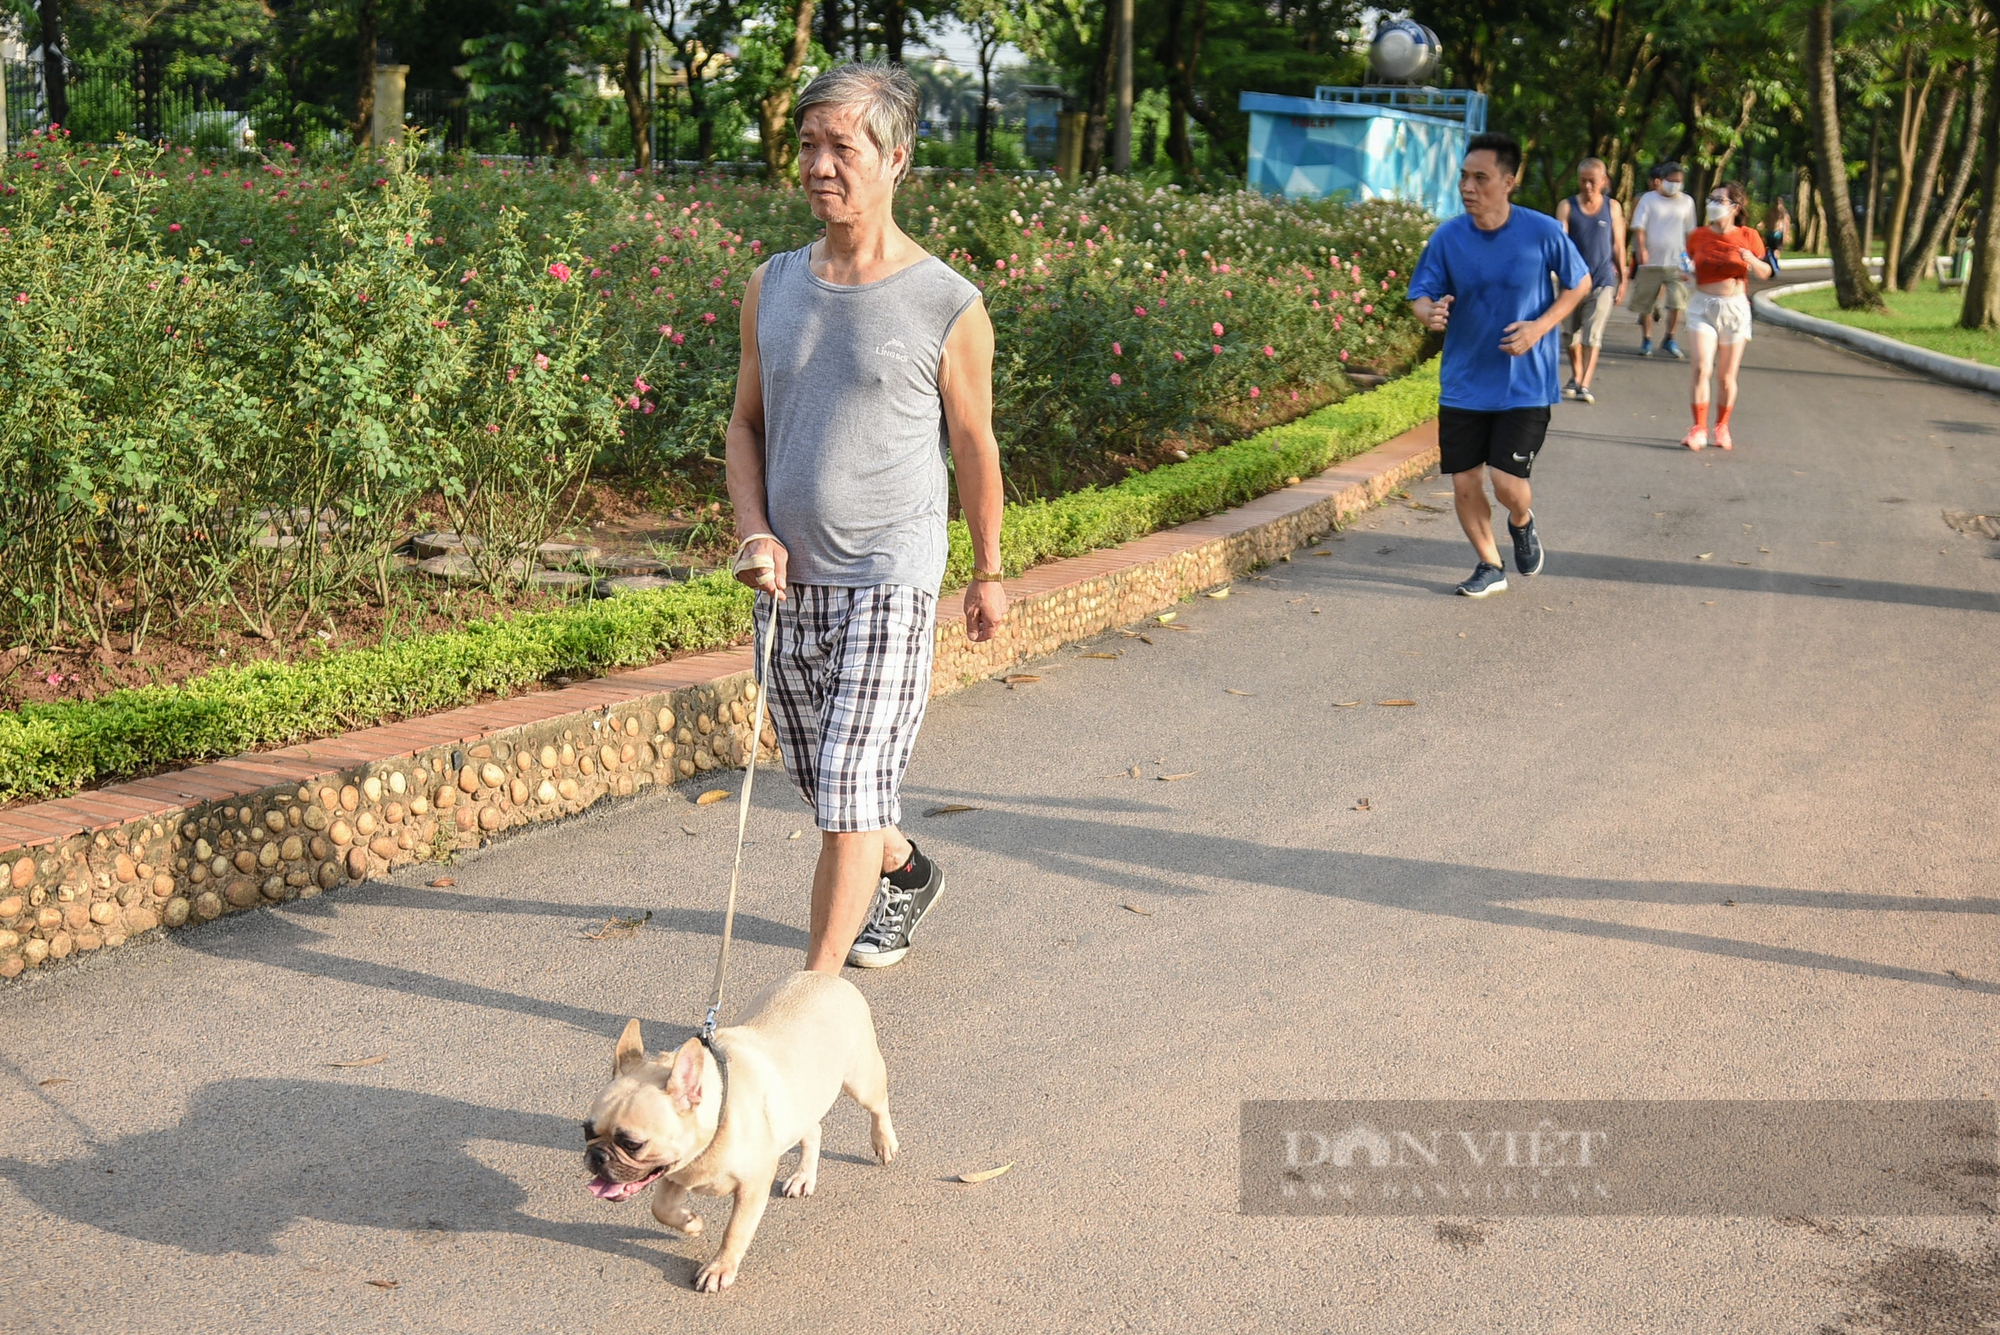 Công viên, bãi cỏ tại Hà Nội xuất hiện đầy rẫy chó không rọ mõm, dây xích được thả rông - Ảnh 10.